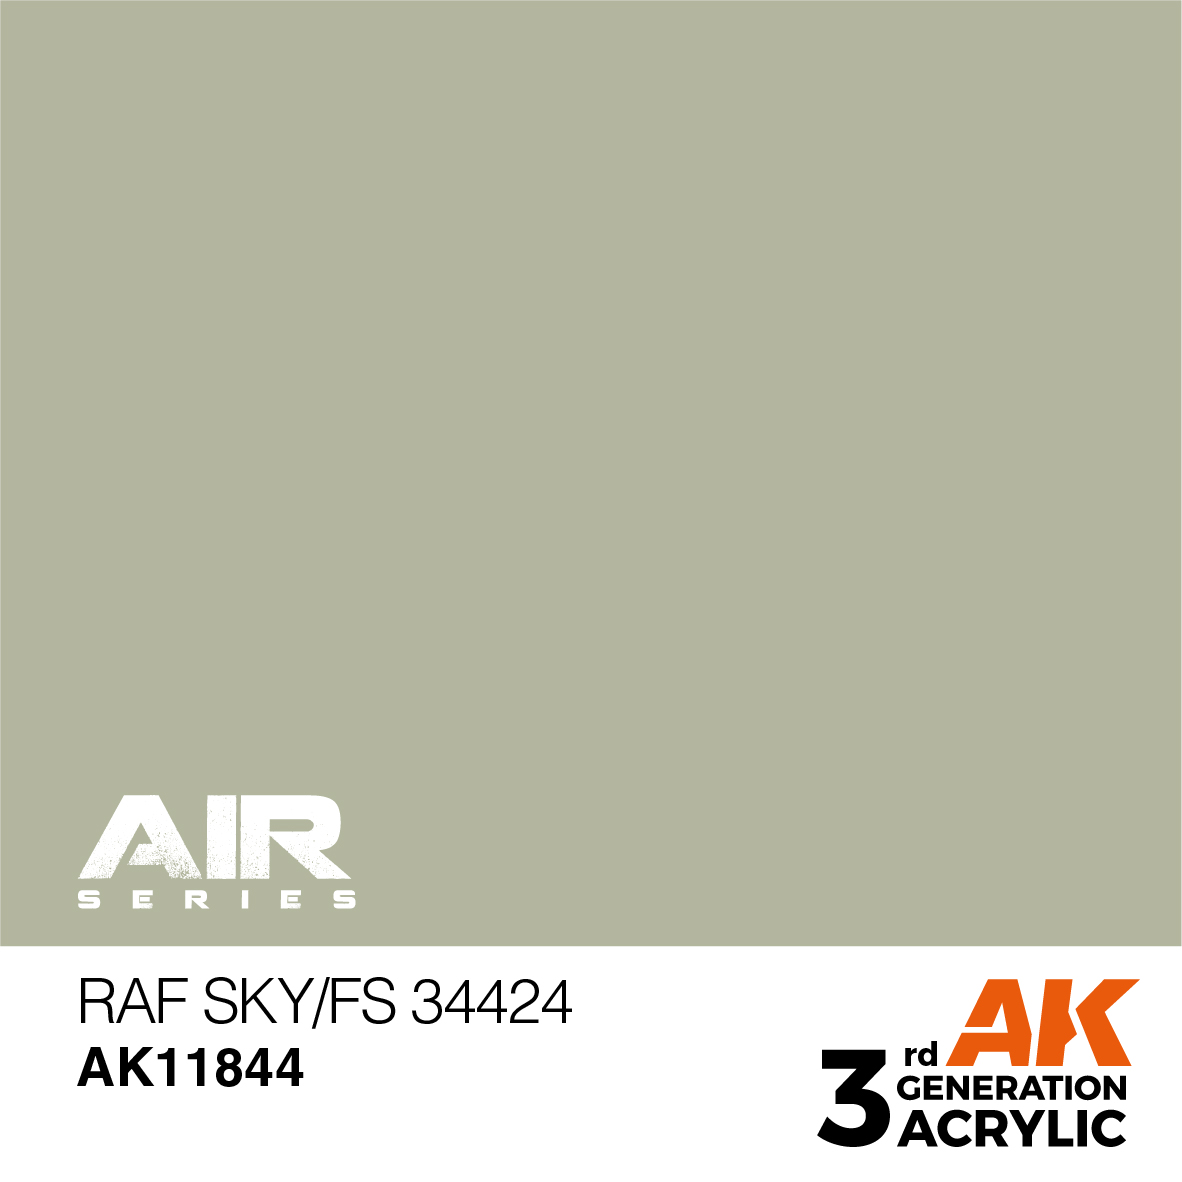 RAF Sky / FS 34424 – AIR